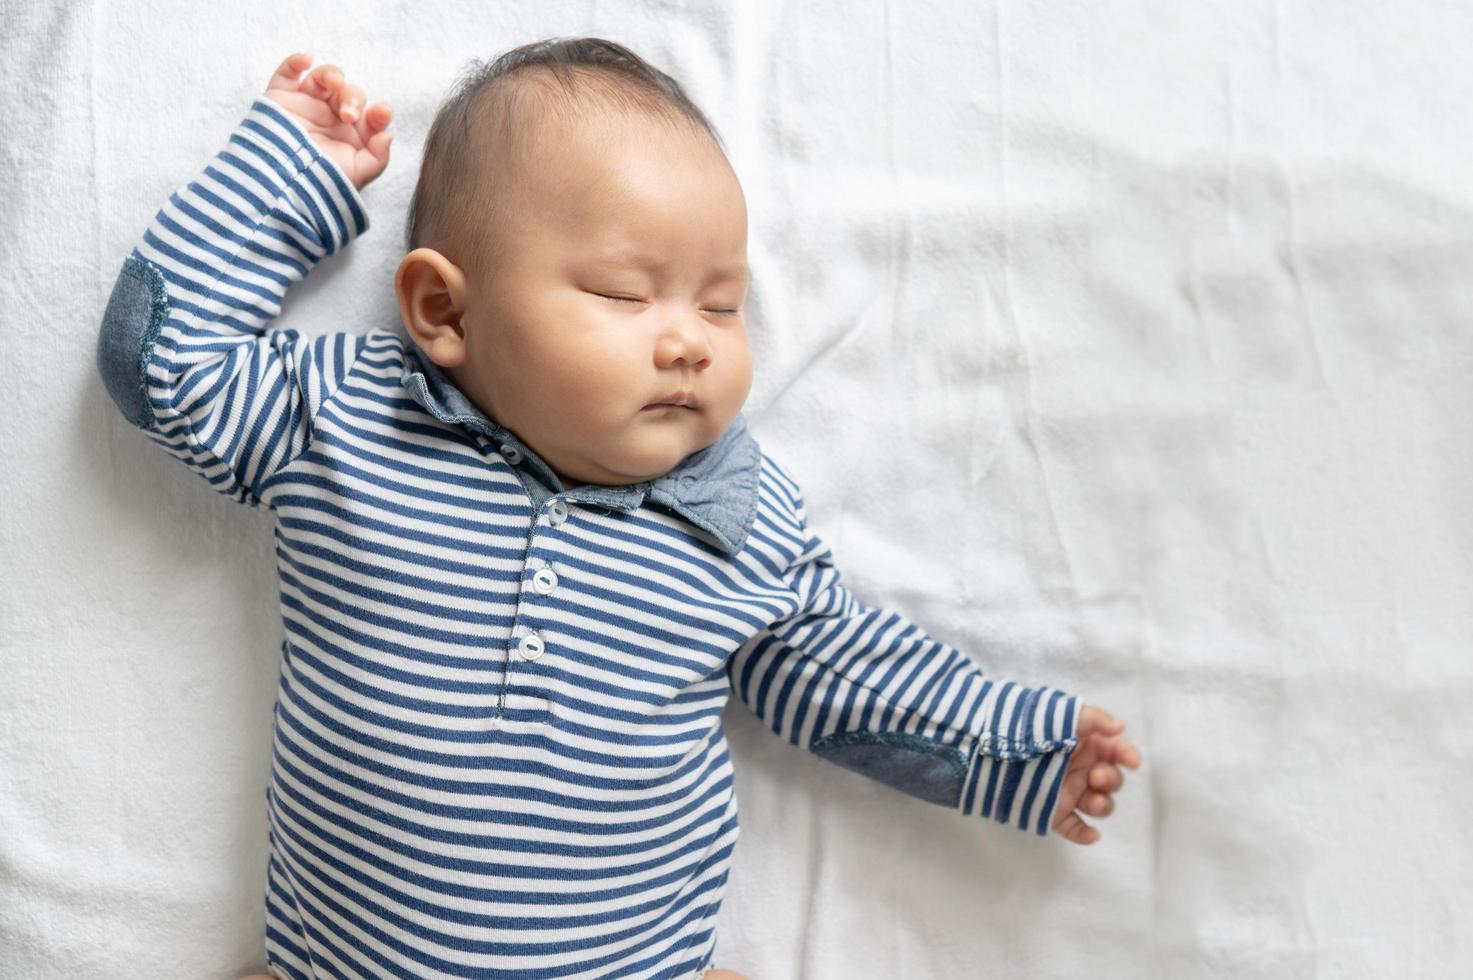 un petit garçon dans une chemise rayée dormant dans son lit photo